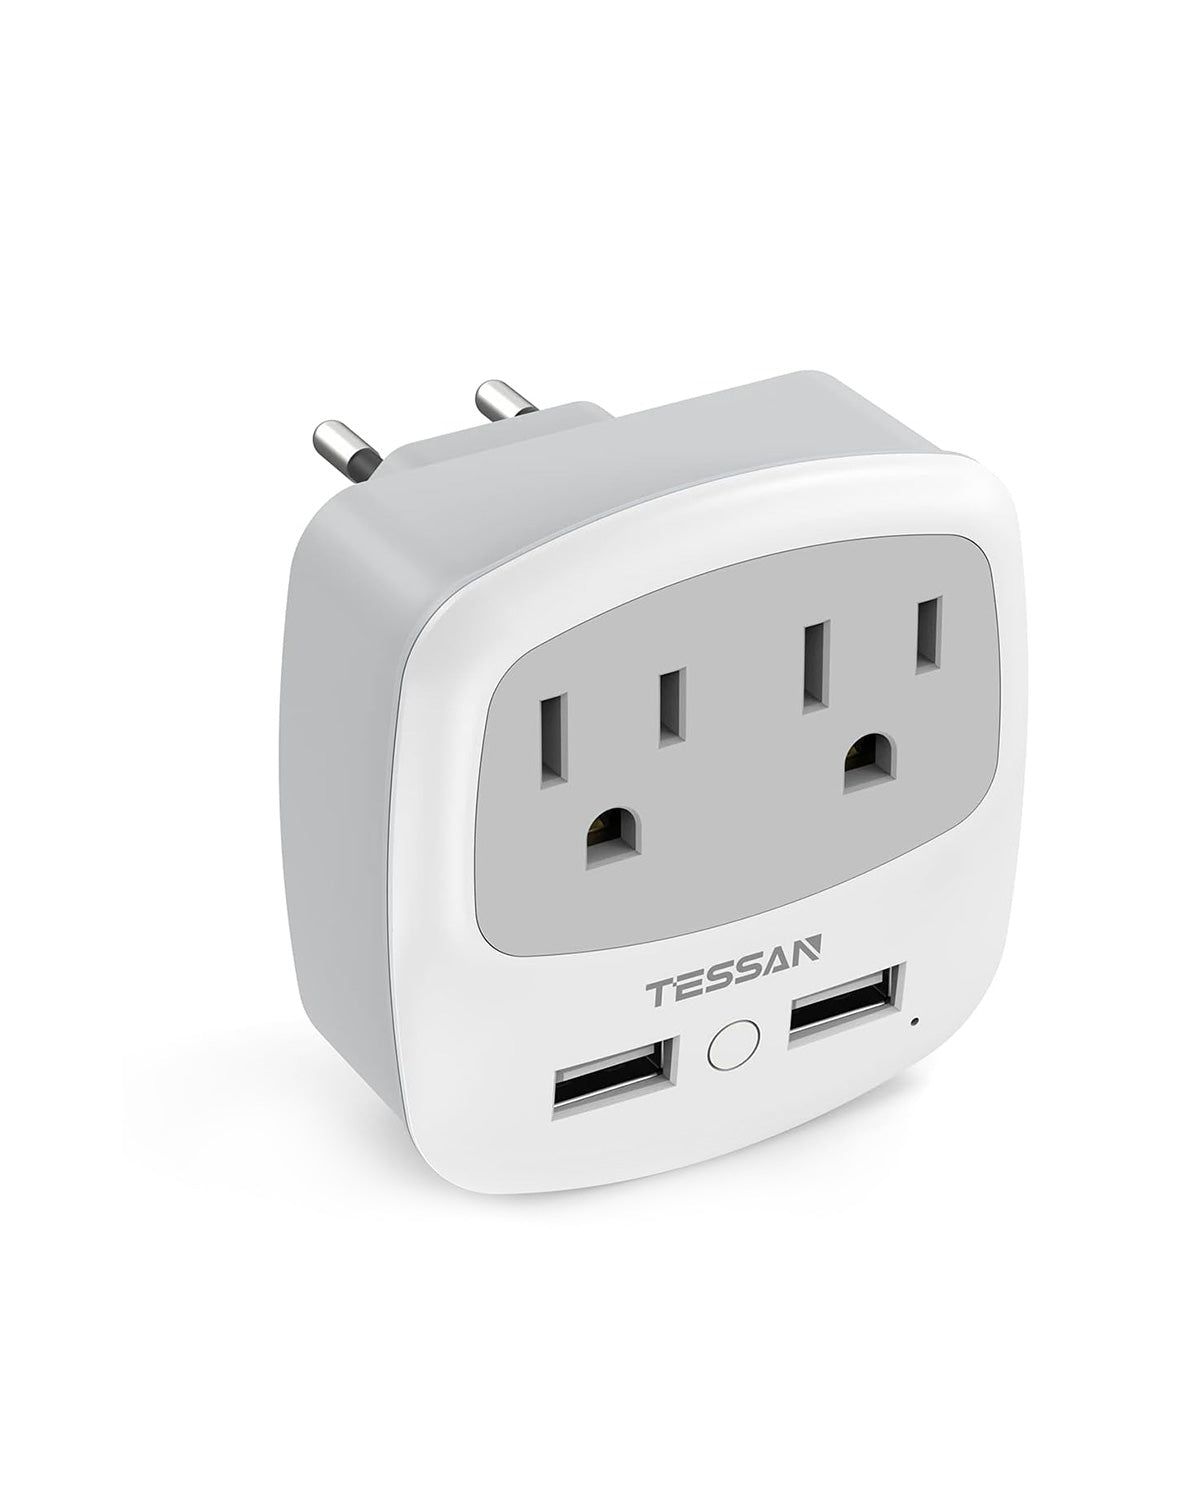 TESSAN 韓国 コンセント 旅行用変換器 電源変換アダプター 2個ACコンセント 2個USB-Aポート変換コンセント